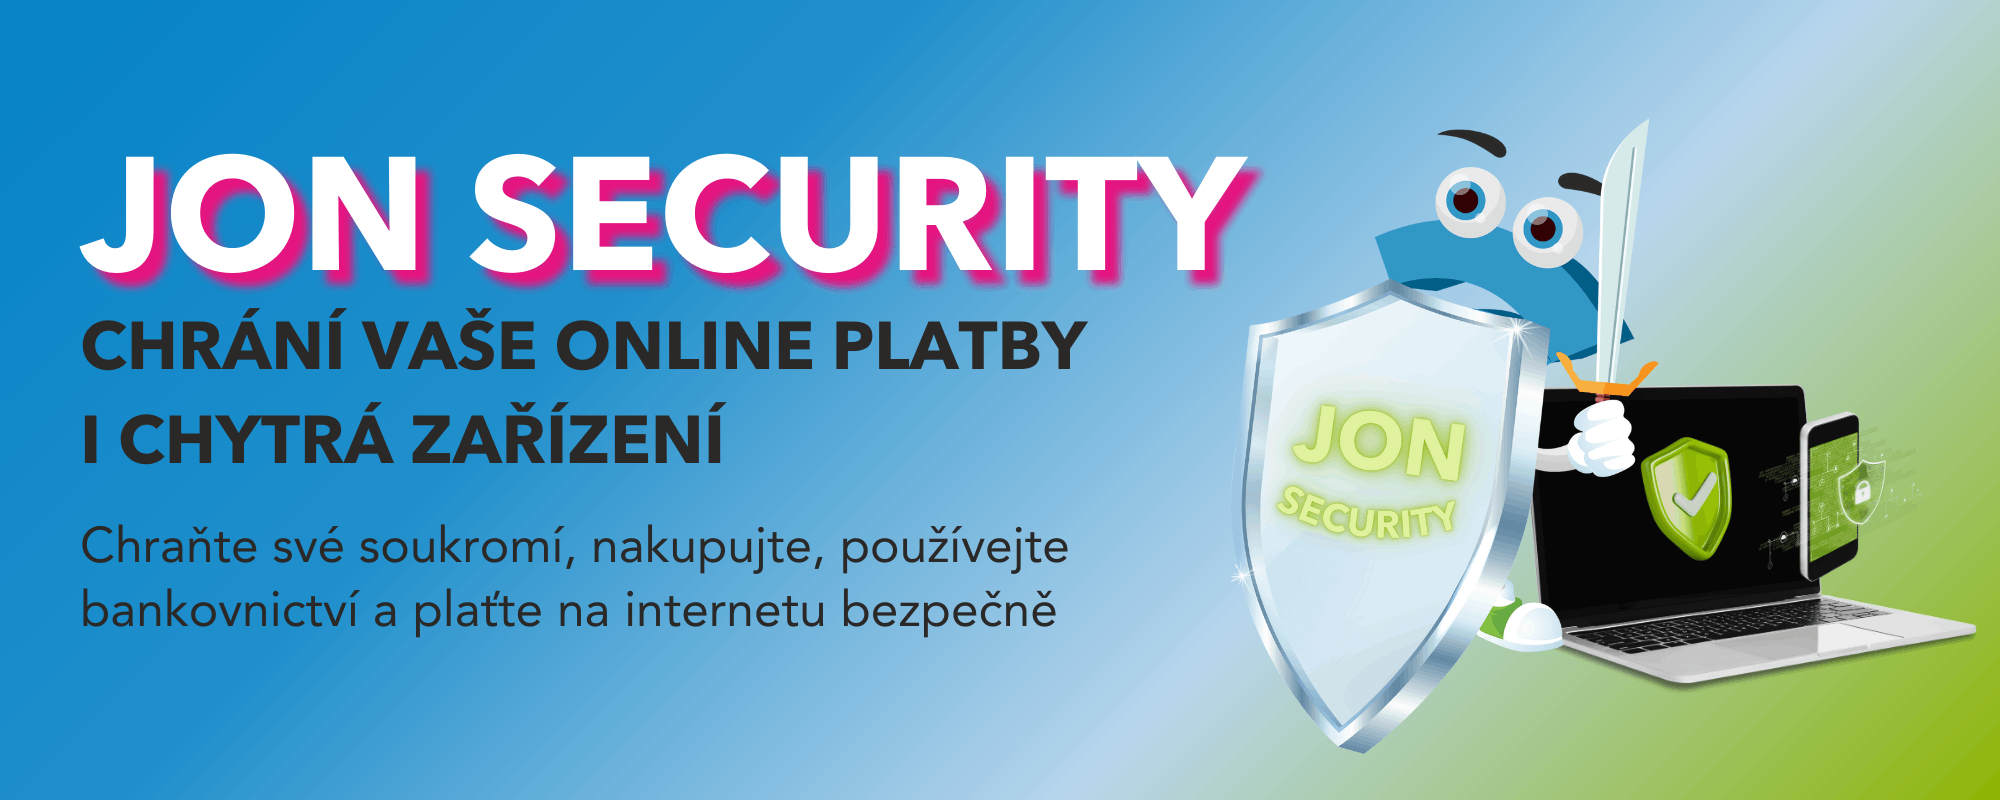 JON Security chrání vaše online platby i chytrá zařízení